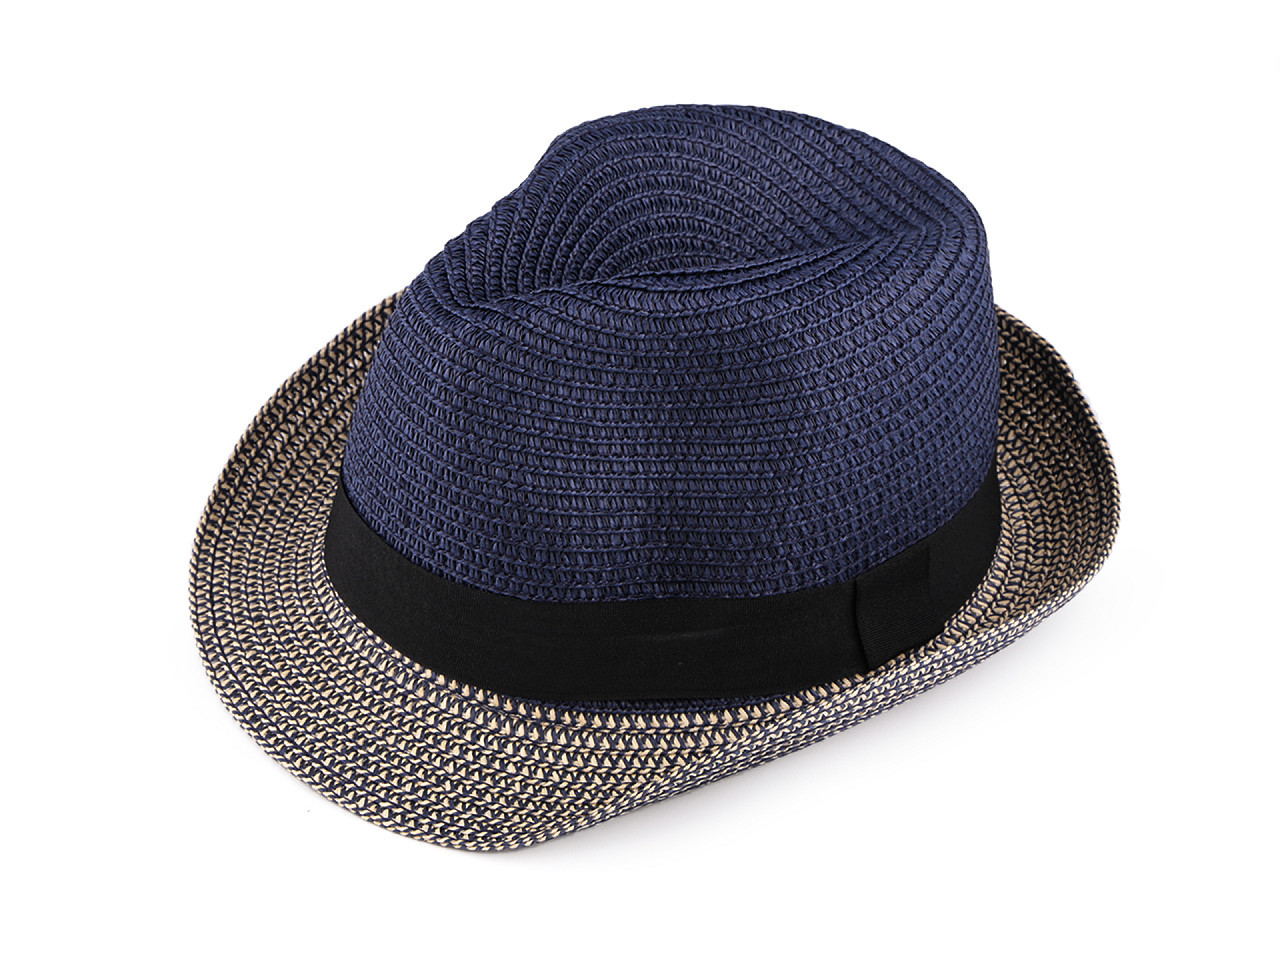 Letní klobouk / slamák unisex, barva 10 modrá pařížská